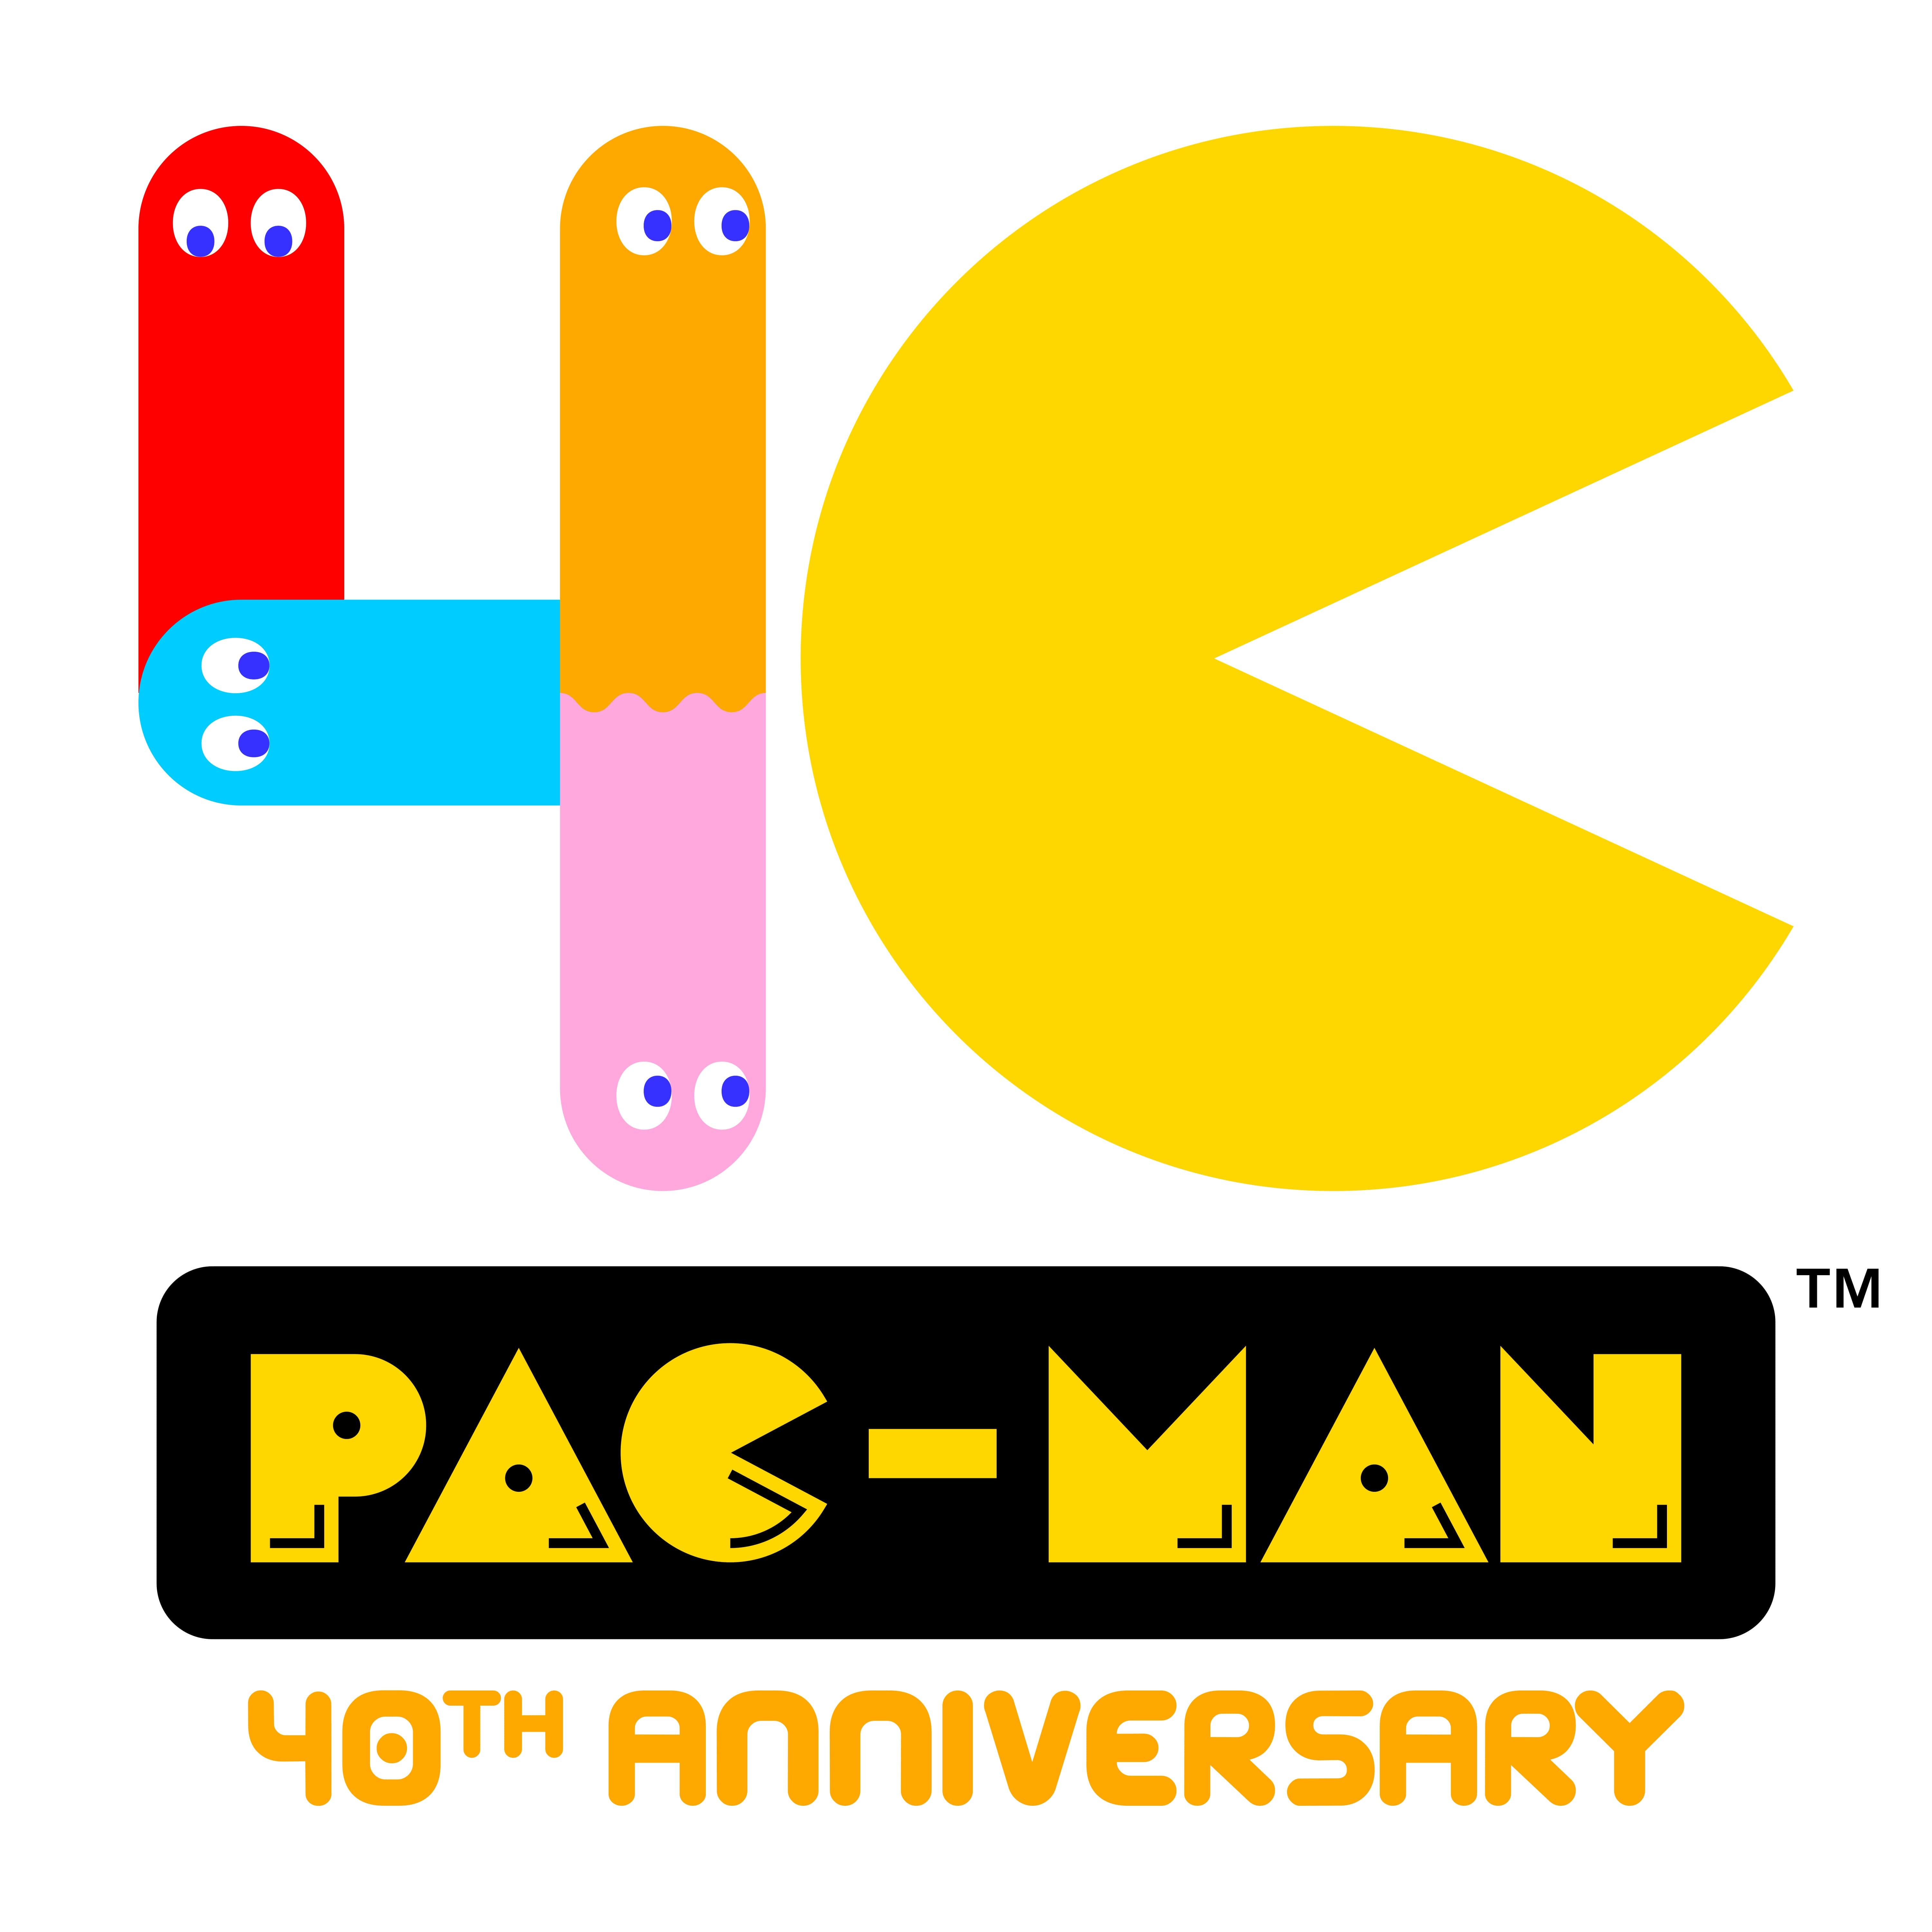 pac-man 40 anni